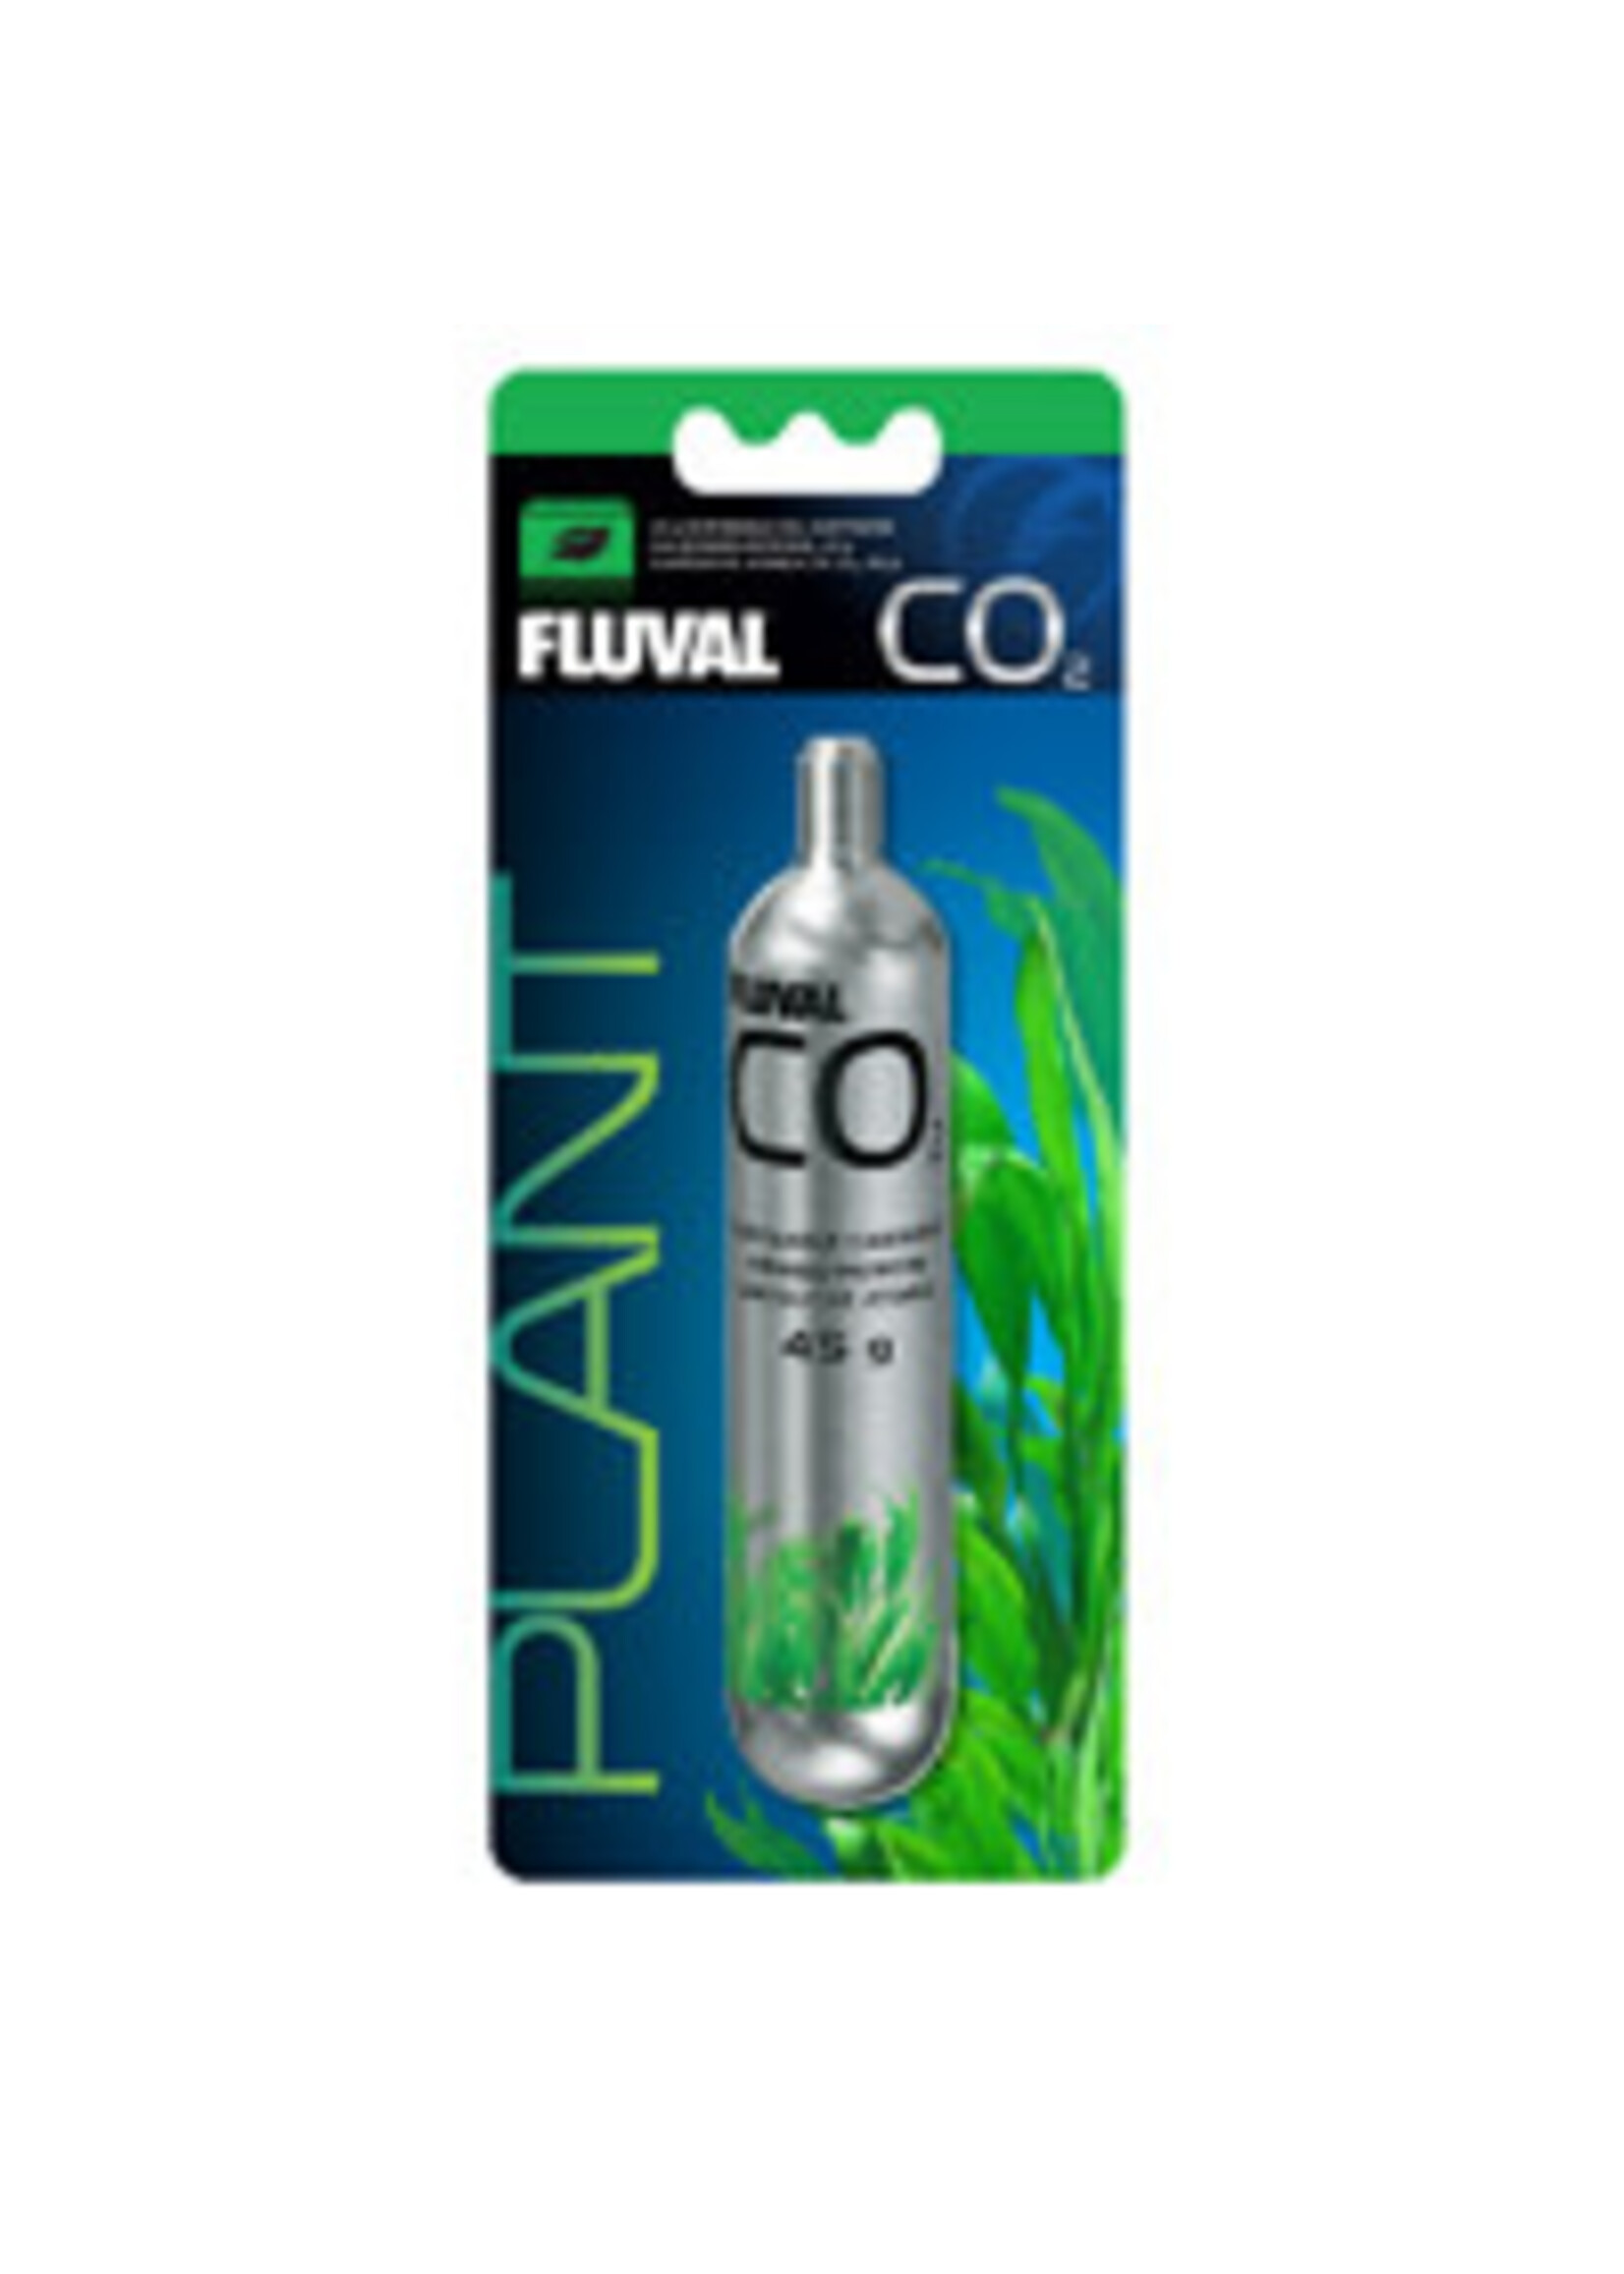 Fluval 45G CO2 CARTRIDGE 1PK